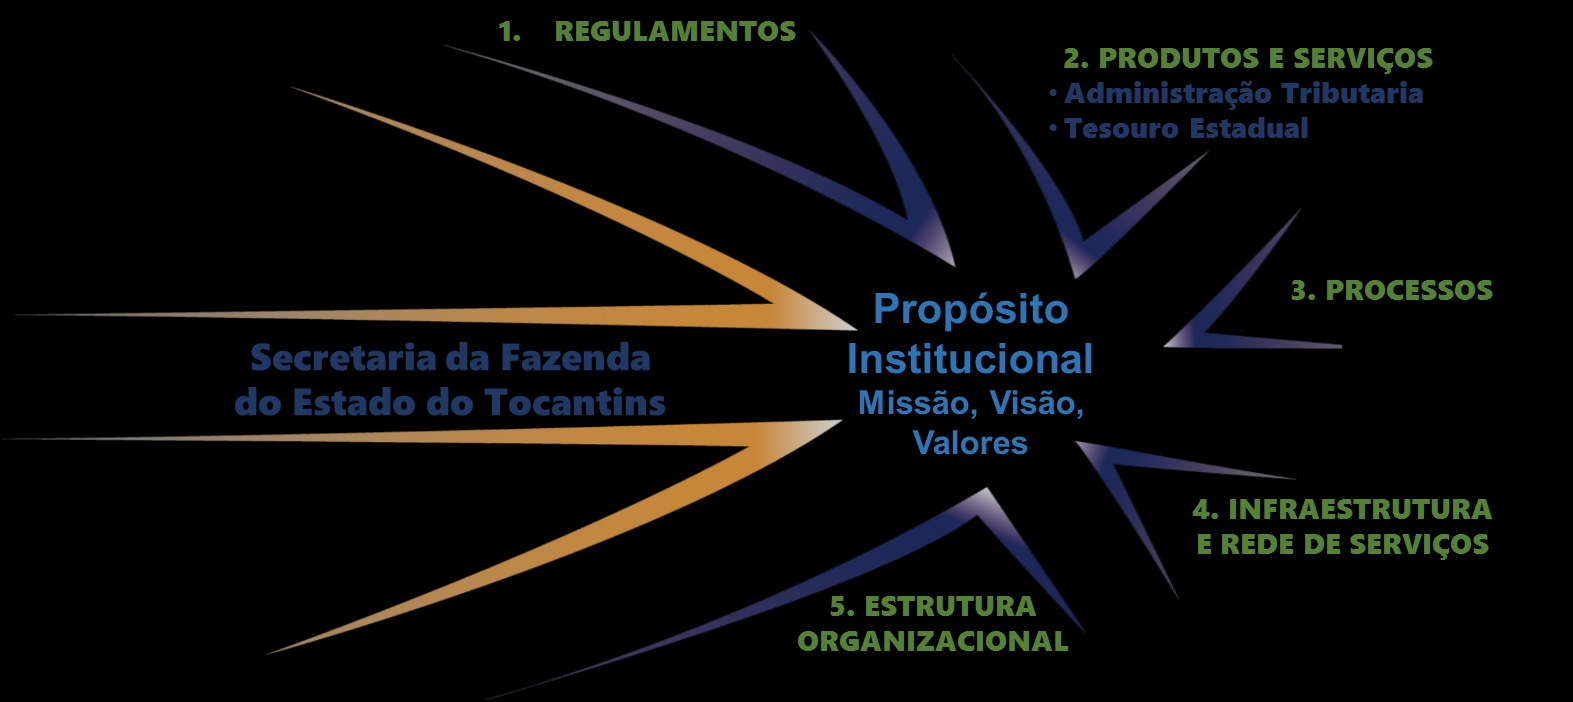 Fundamentos da Excelência em Gestão Pensamento sistêmico: compreensão e tratamento das relações de interdependência e seus efeitos entre os diversos componentes que formam a organização, bem como